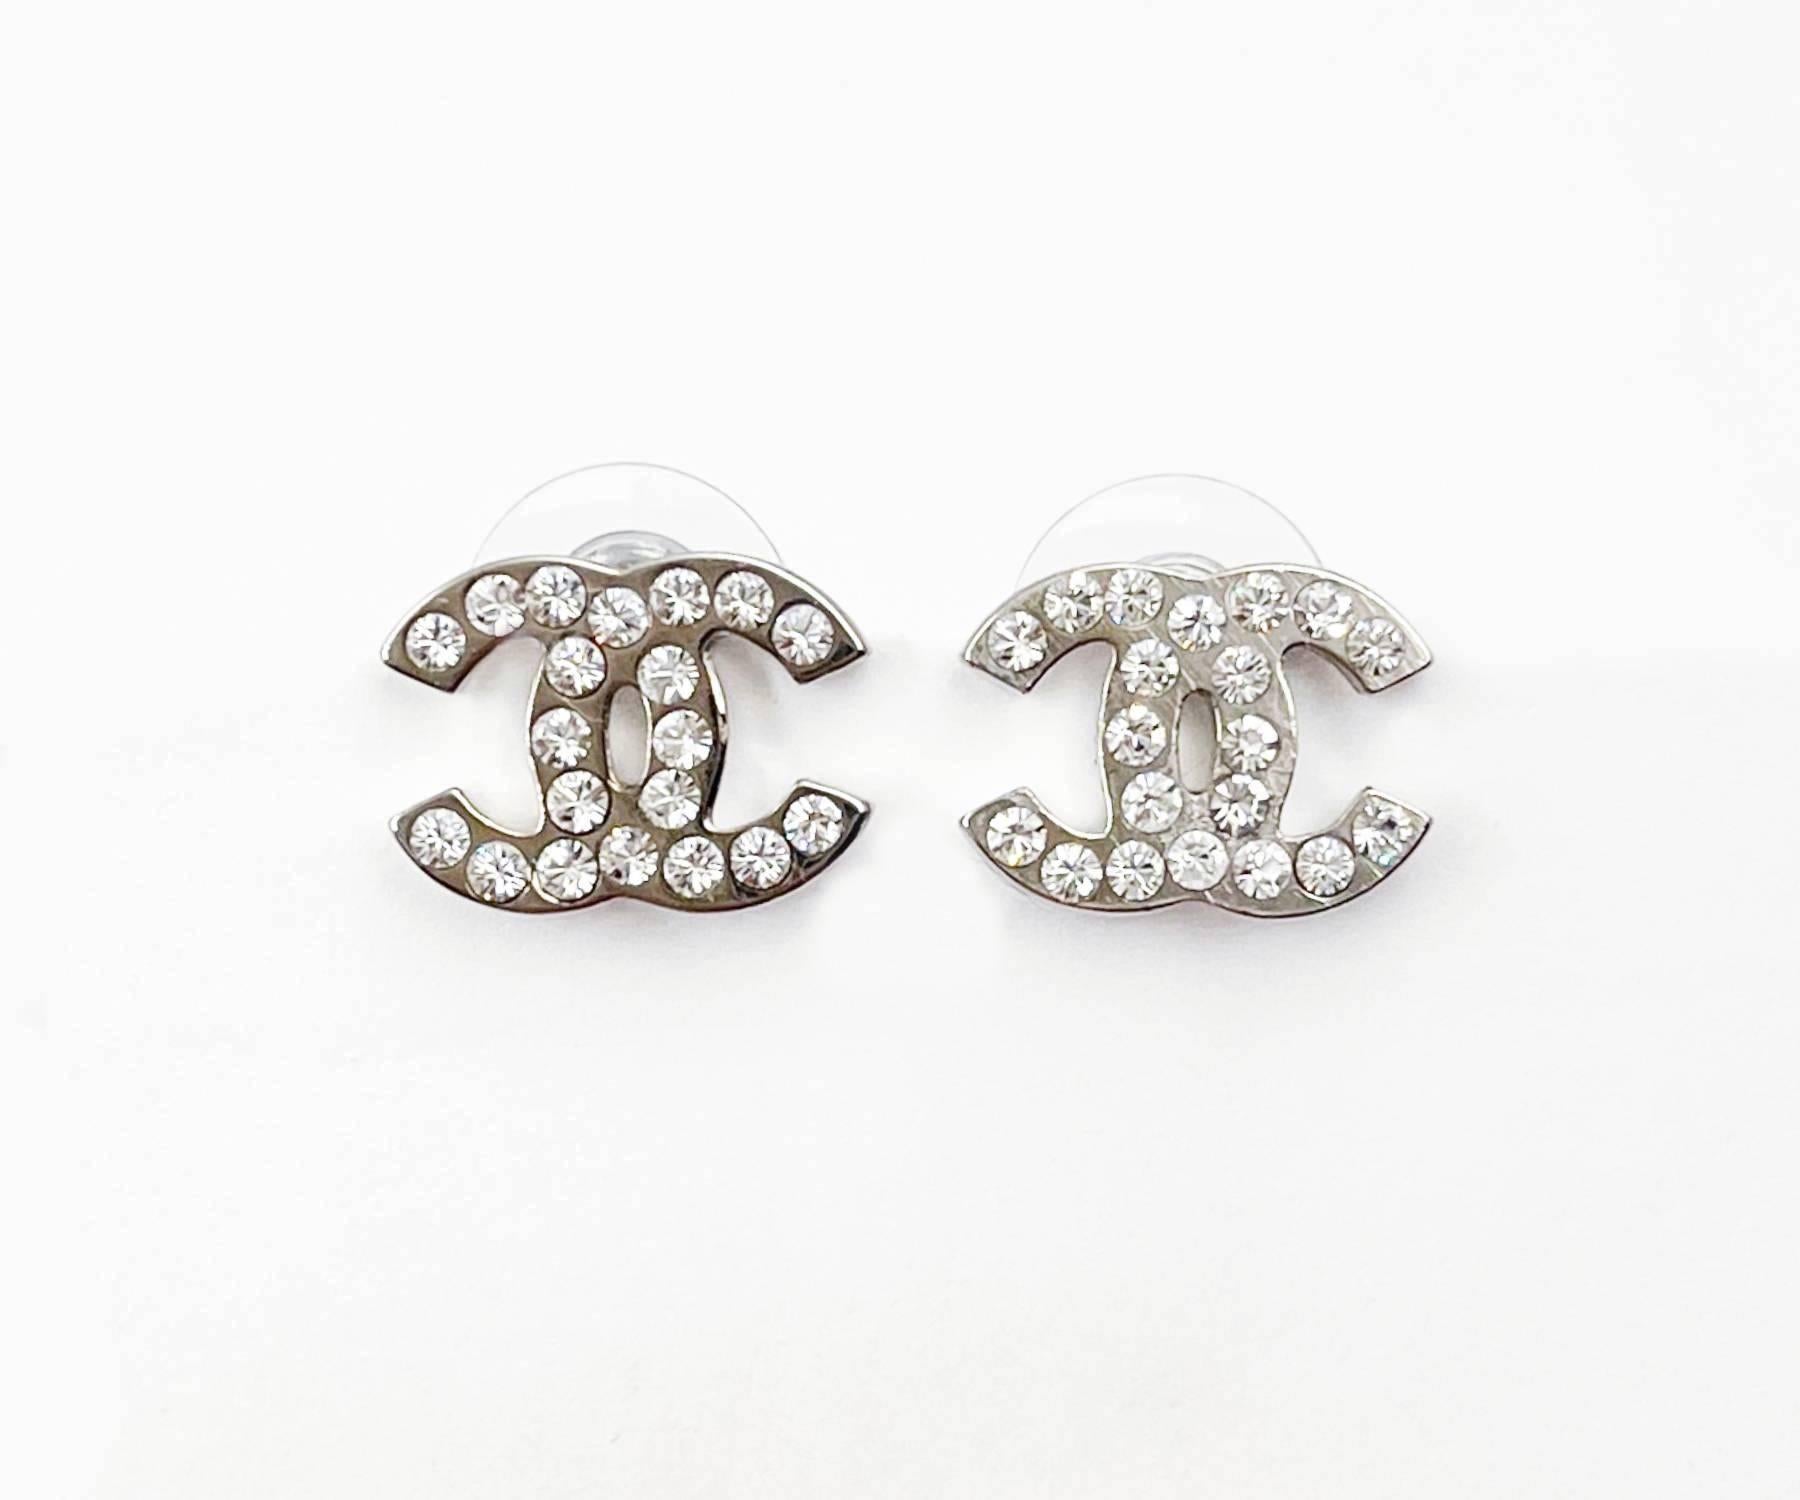 Chanel Classic Silber CC Kristall Medium Piercing Ohrringe

*Markiert 09
*Hergestellt in Frankreich
*Kommt mit dem Originalkarton

-Es ist ungefähr 0,6″ x 0,55″.
-Dies ist einer der begehrtesten und meistverkauften klassischen